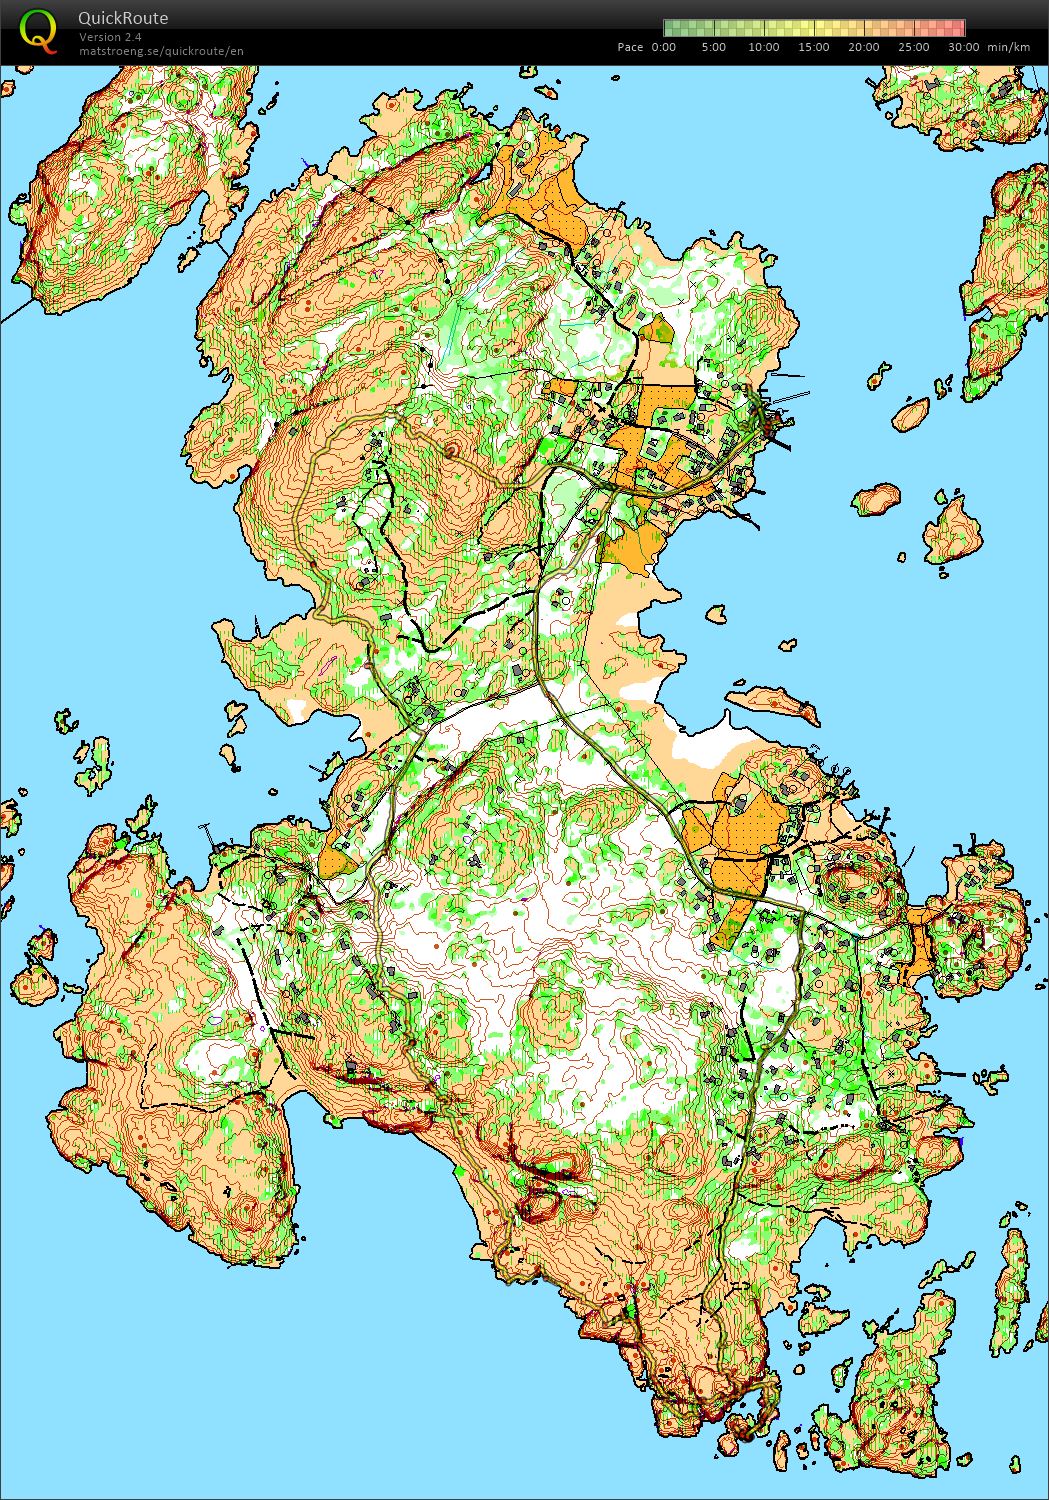 Herføl path survey (2016-06-05)